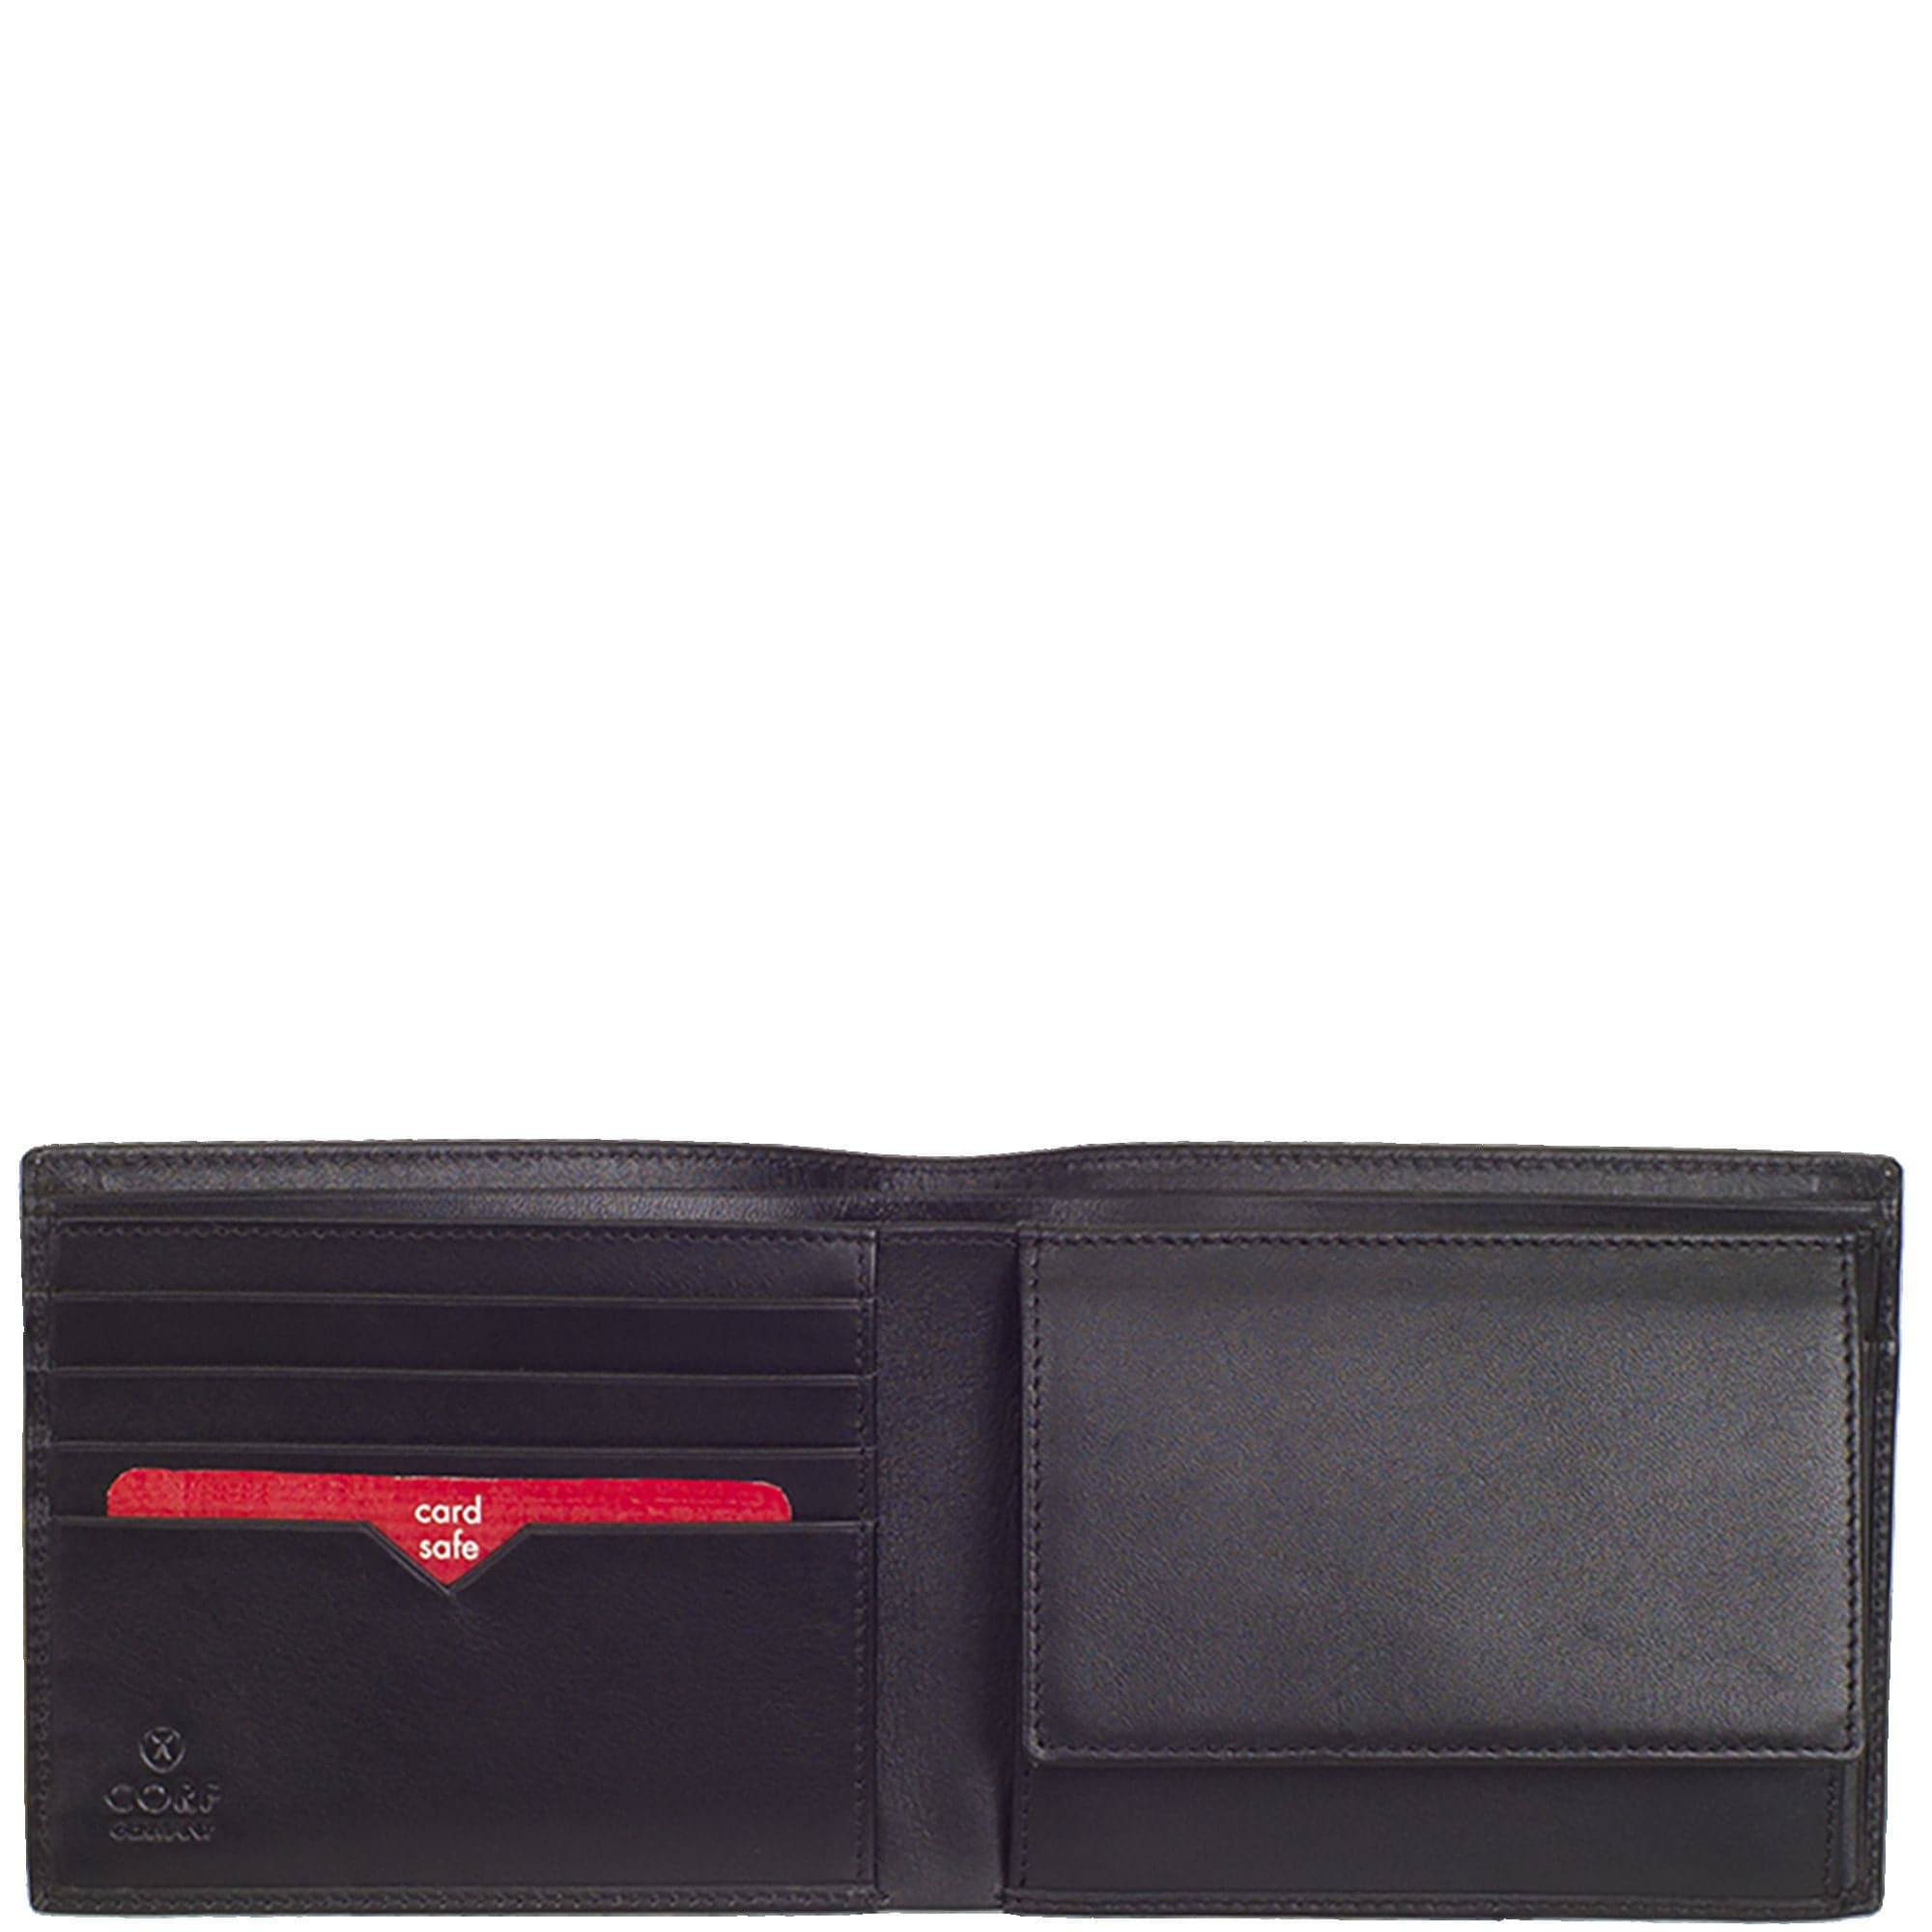 Geldbörse Portemonnaie Leder schwarz Standardformat